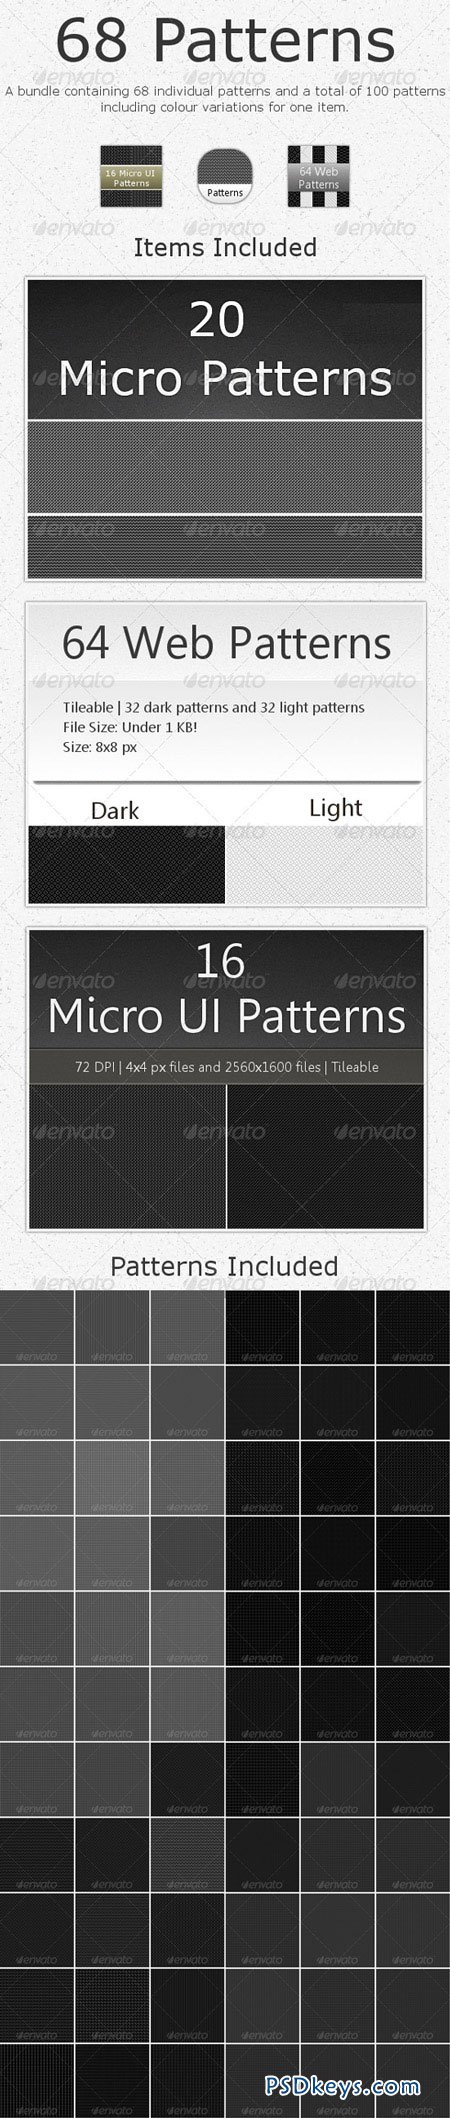 68 Tileable Patterns - Bundle 2655815